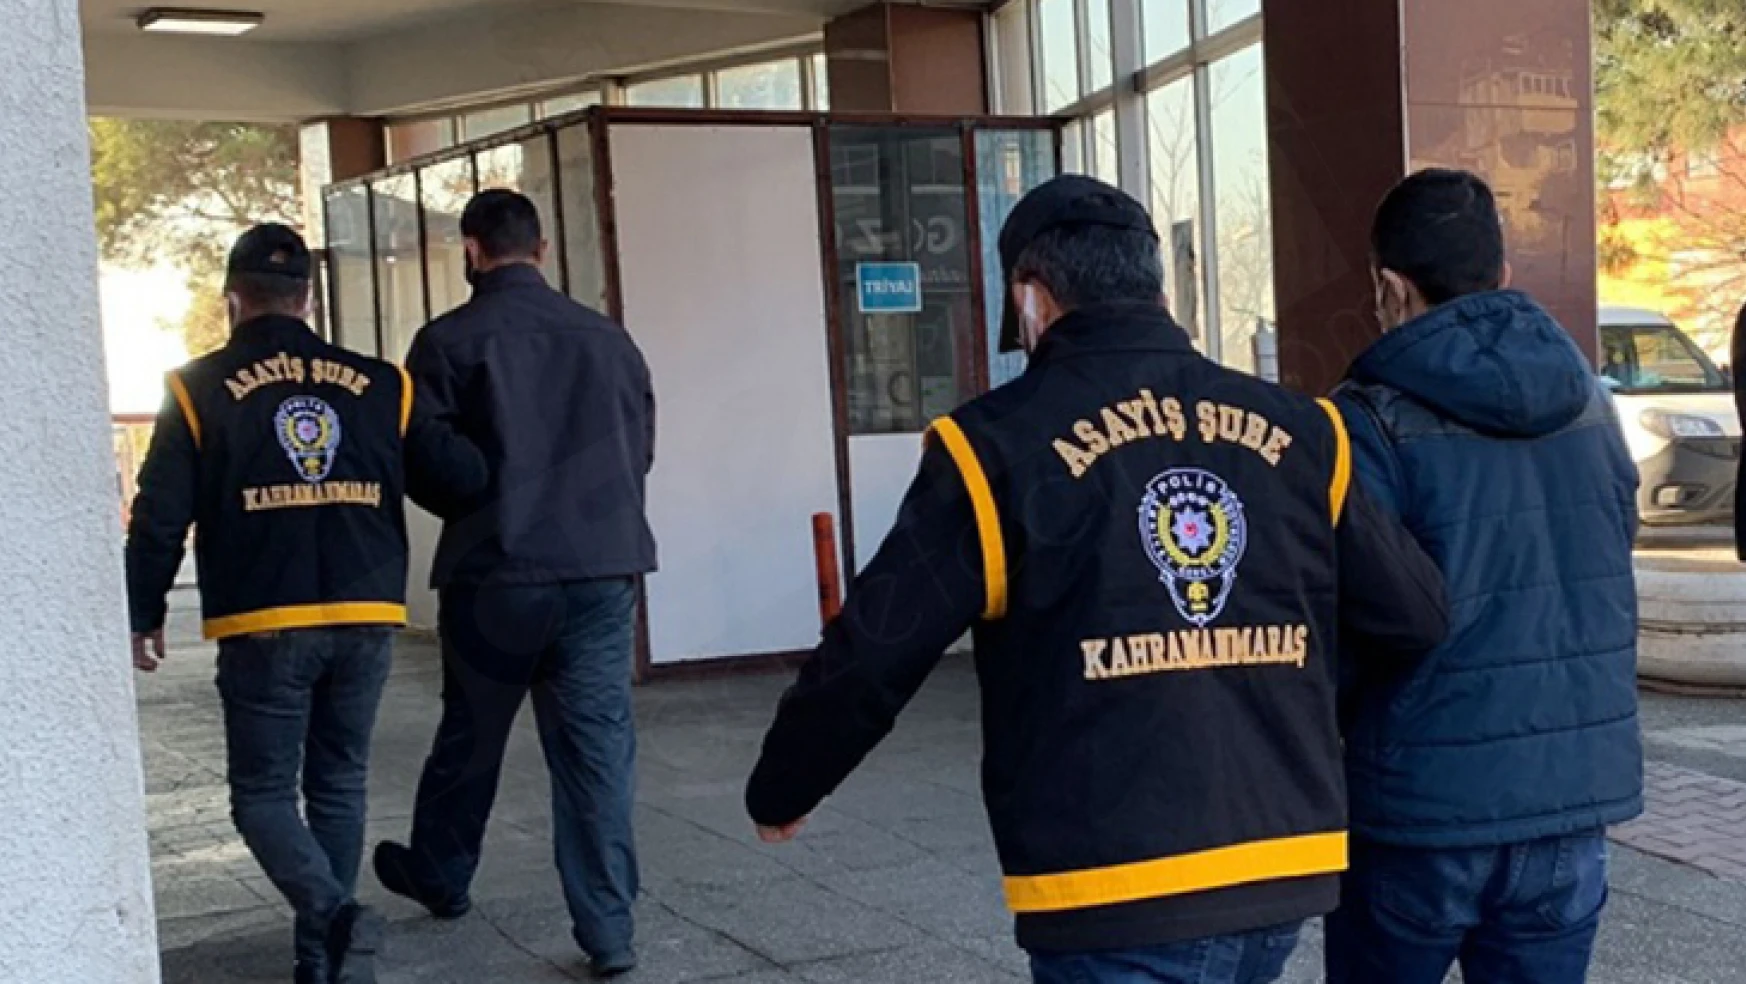 Kahramanmaraş'ta aranan şahıslara göz açtırılmıyor: 2 kişi tutuklandı